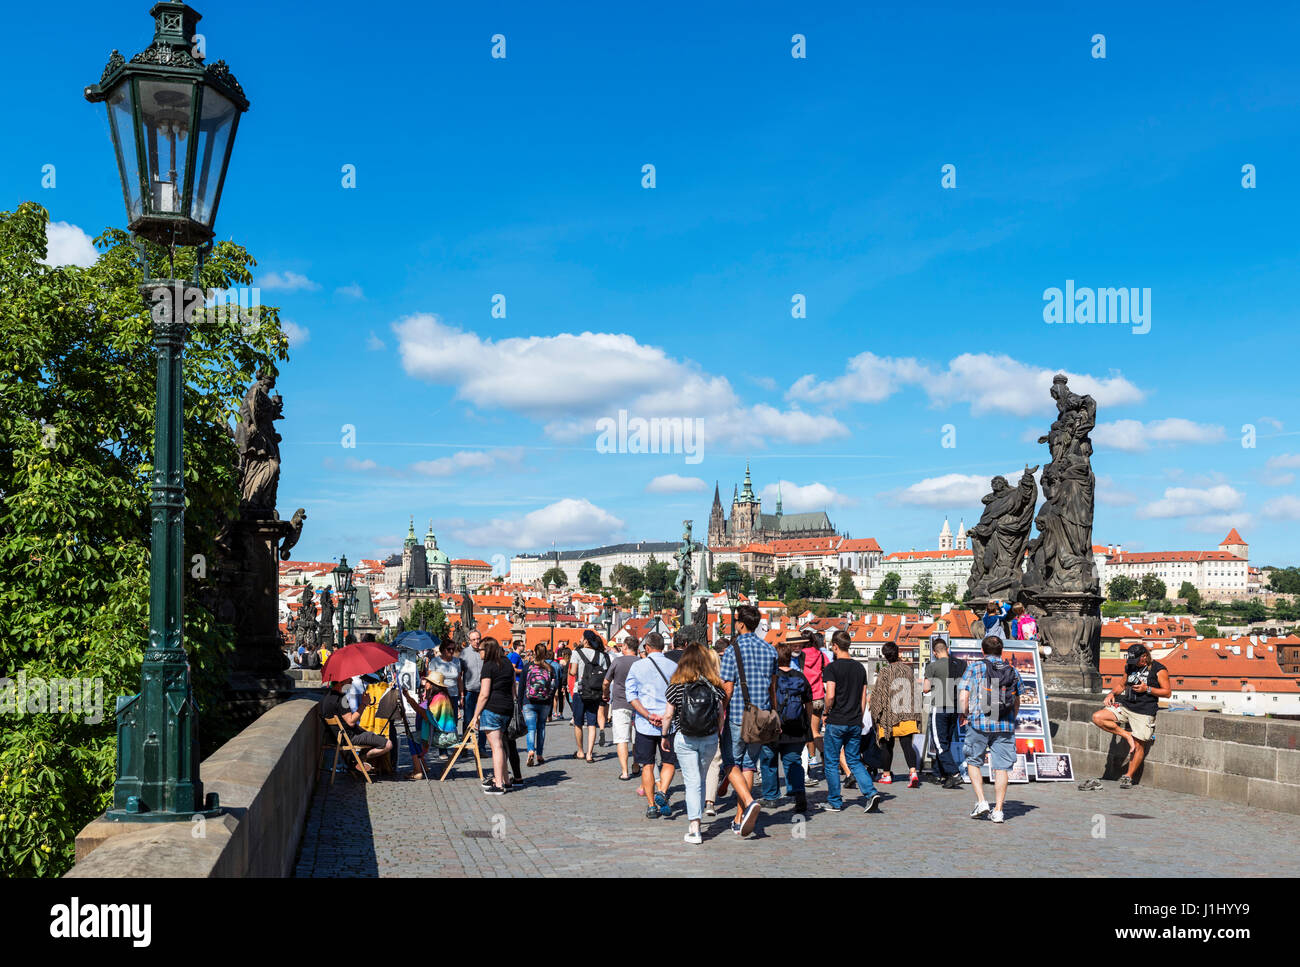 Praga. El Puente de Carlos sobre el río Vltava, mirando hacia el Castillo de Praga y las torres de la Catedral de San Vito, Praga, República Checa Foto de stock